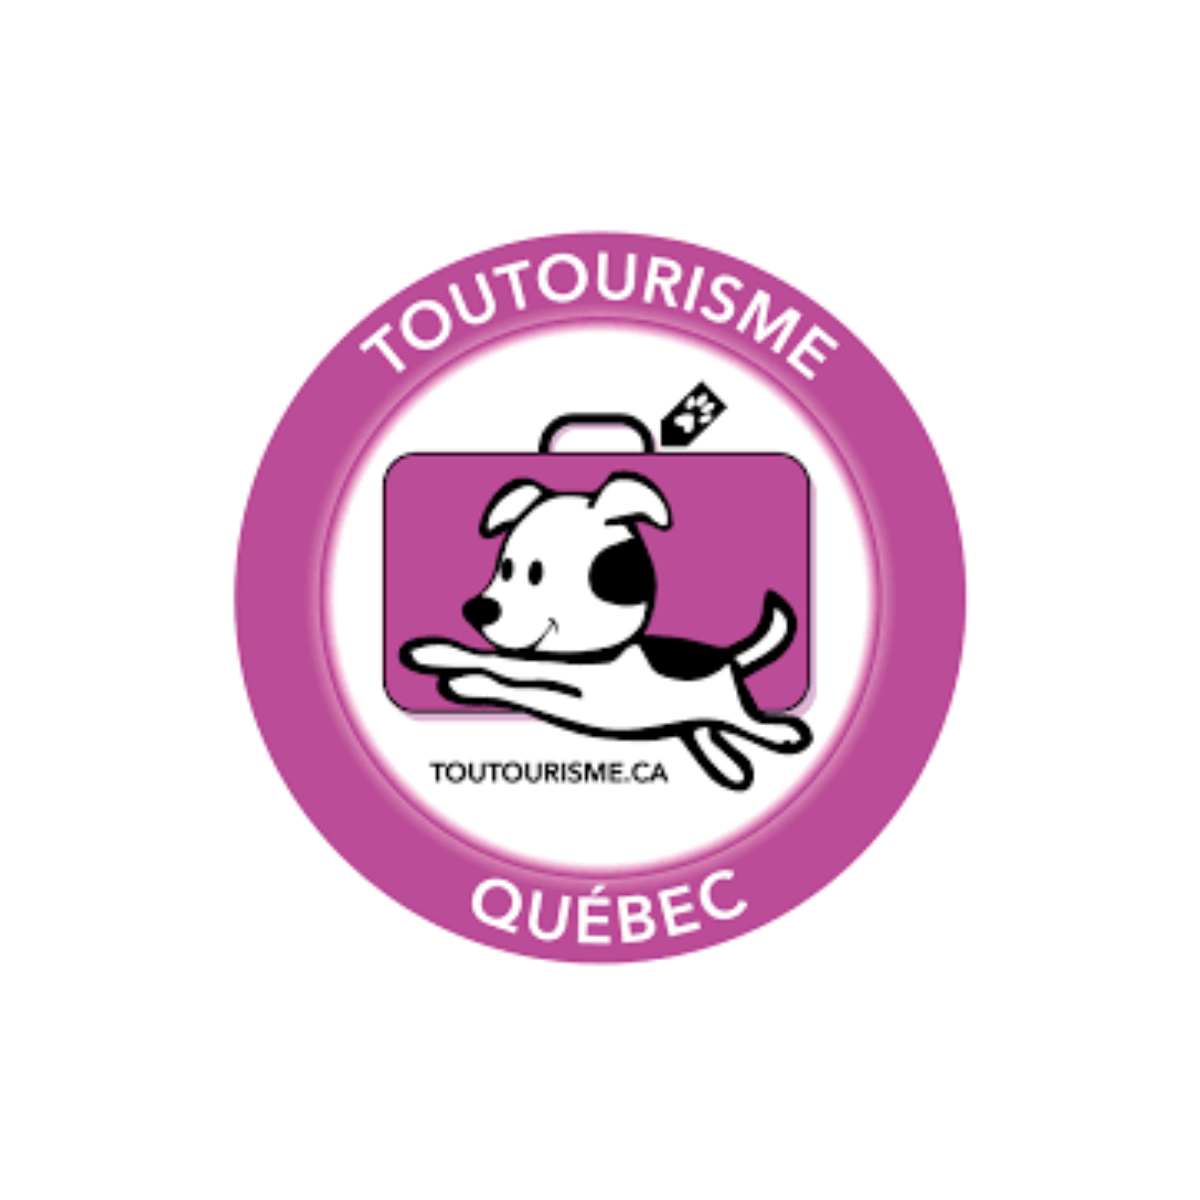 Bleu Lavande et Toutourisme Québec